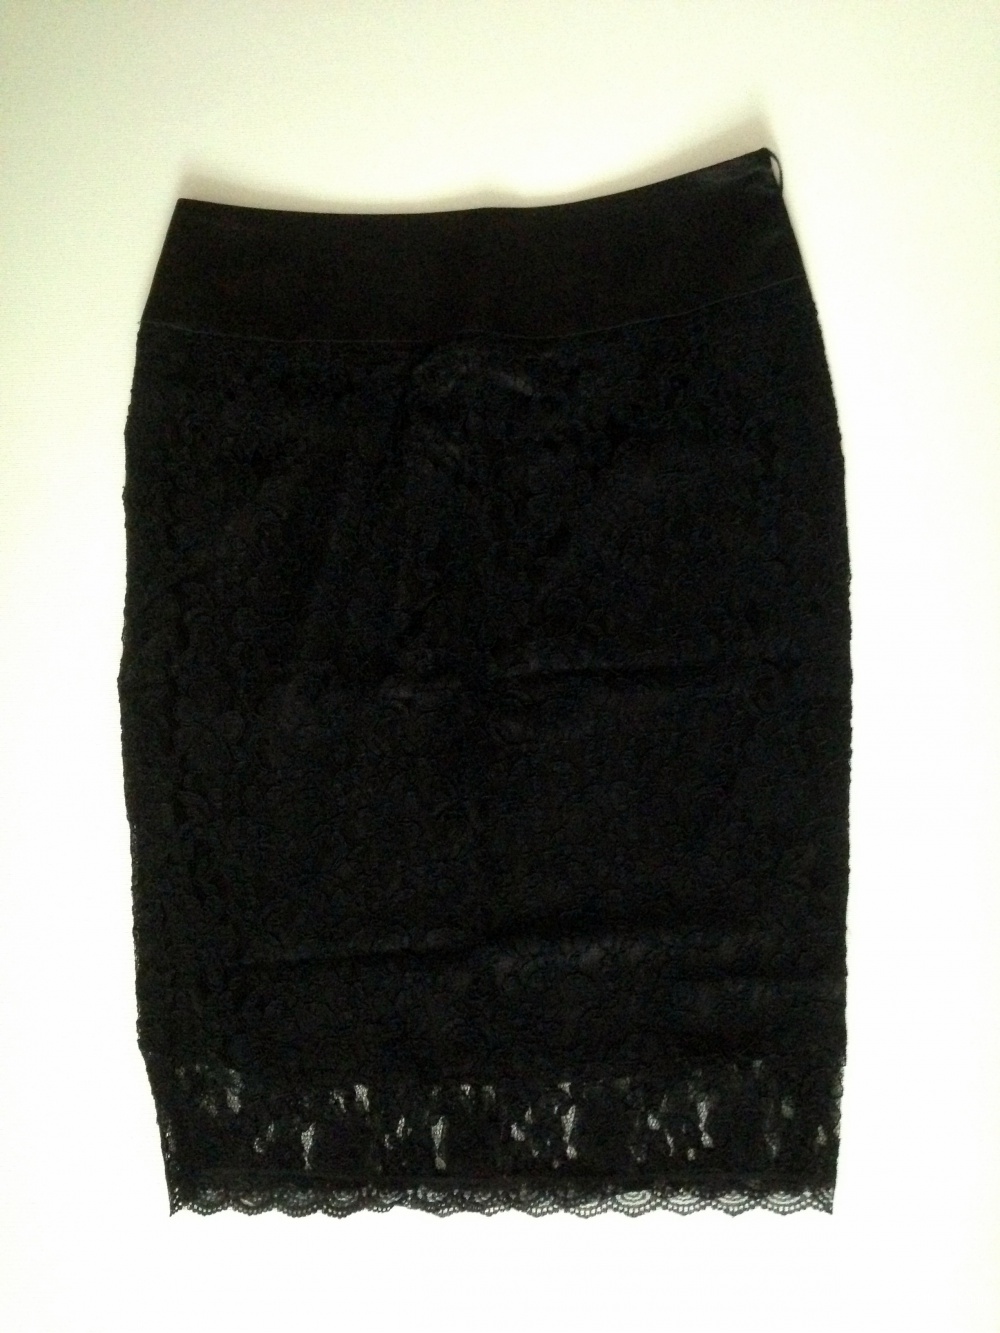 Черная юбка-карандаш кружевная, размер 44